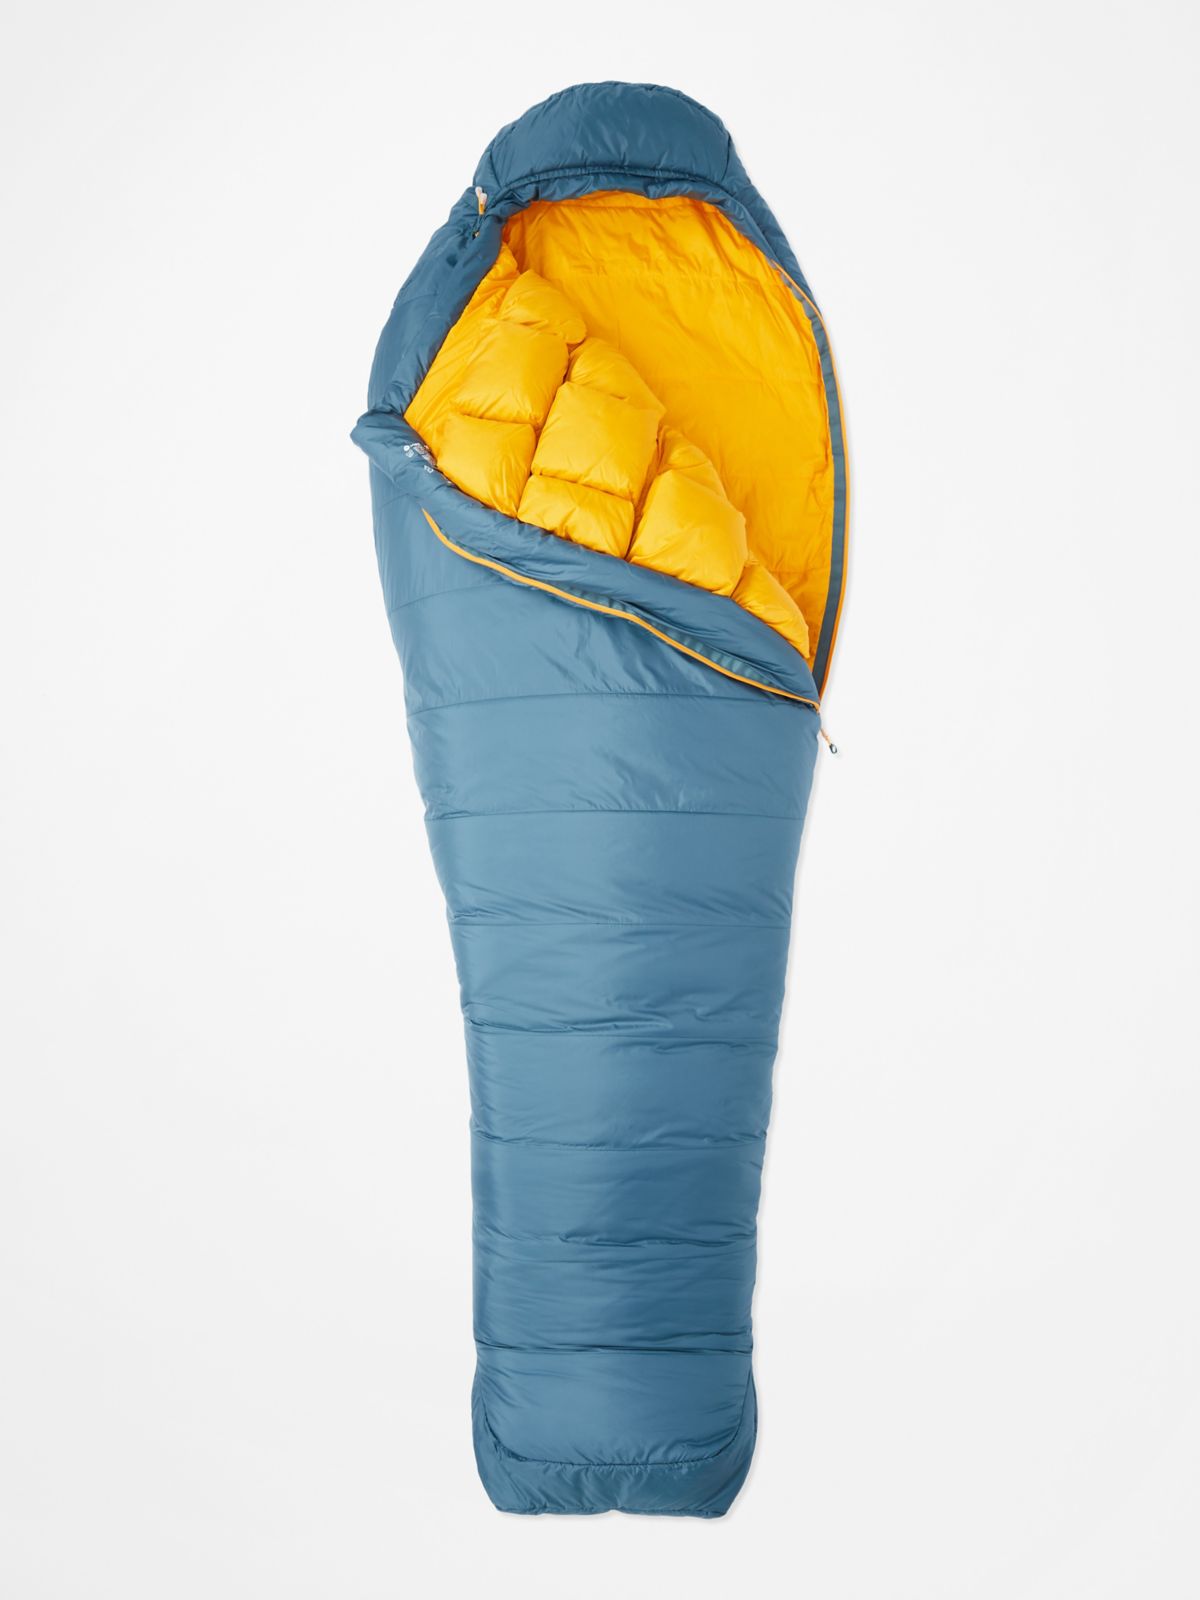 warmcube gallitin 20 sleeping bag